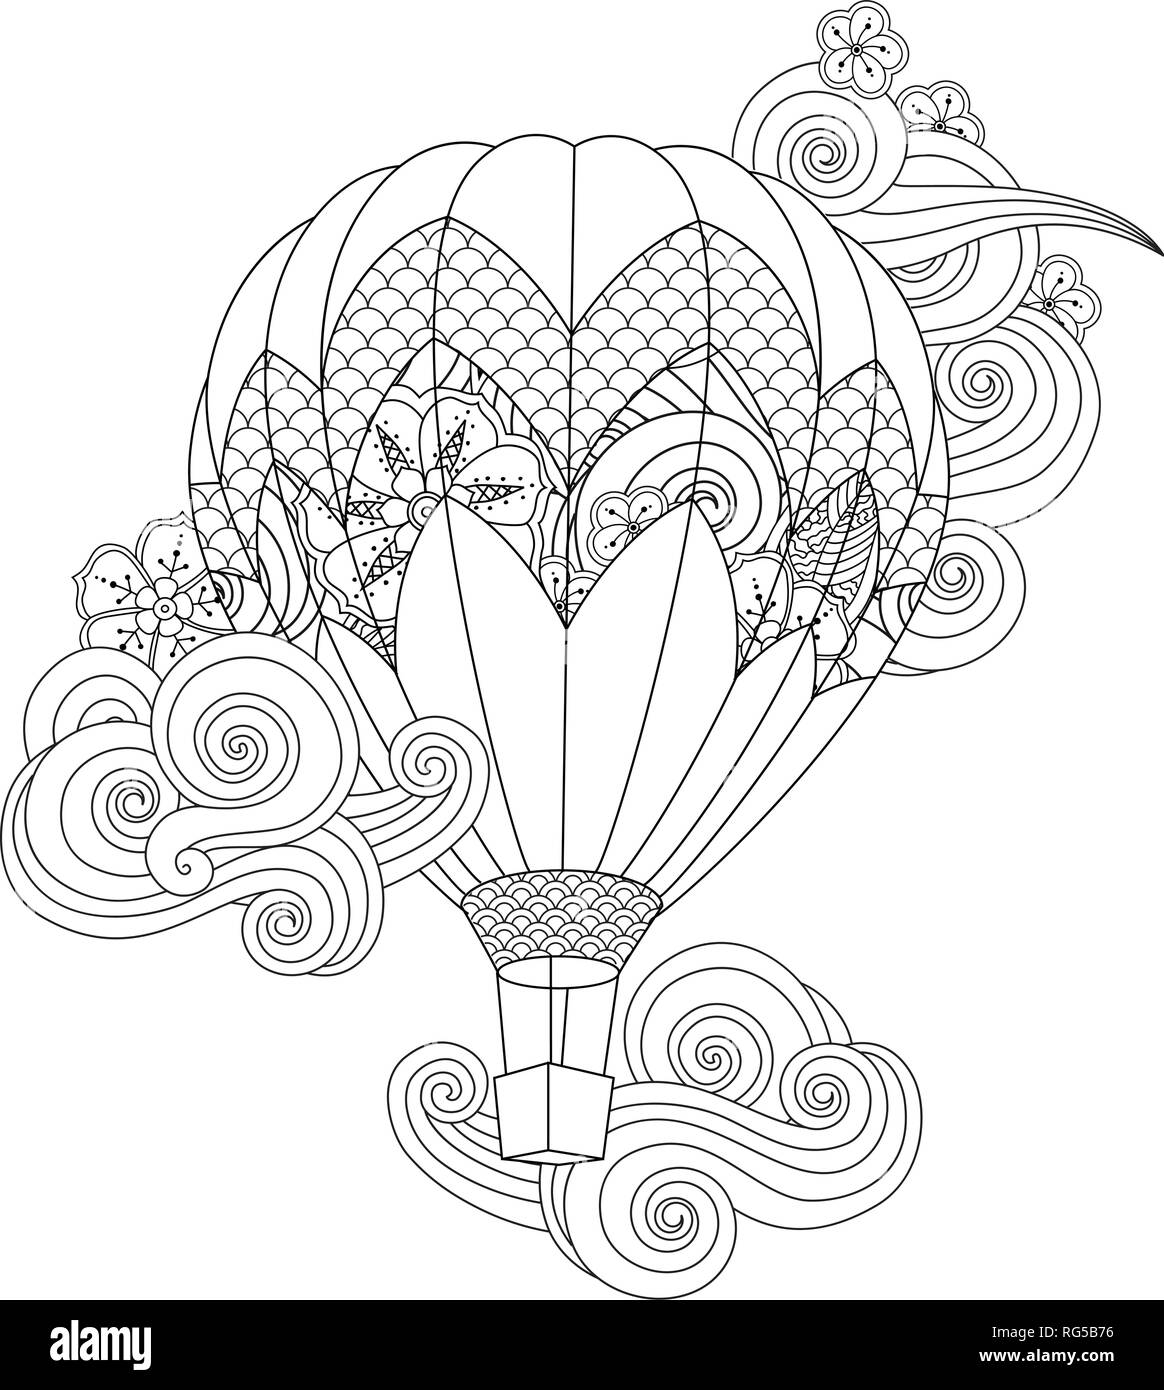 Mongolfiera in zentangle ispirato doodle style isolato su bianco. Libro da colorare pagina per pazienti adulti e bambini di età superiore. Illustrazione Vettoriale